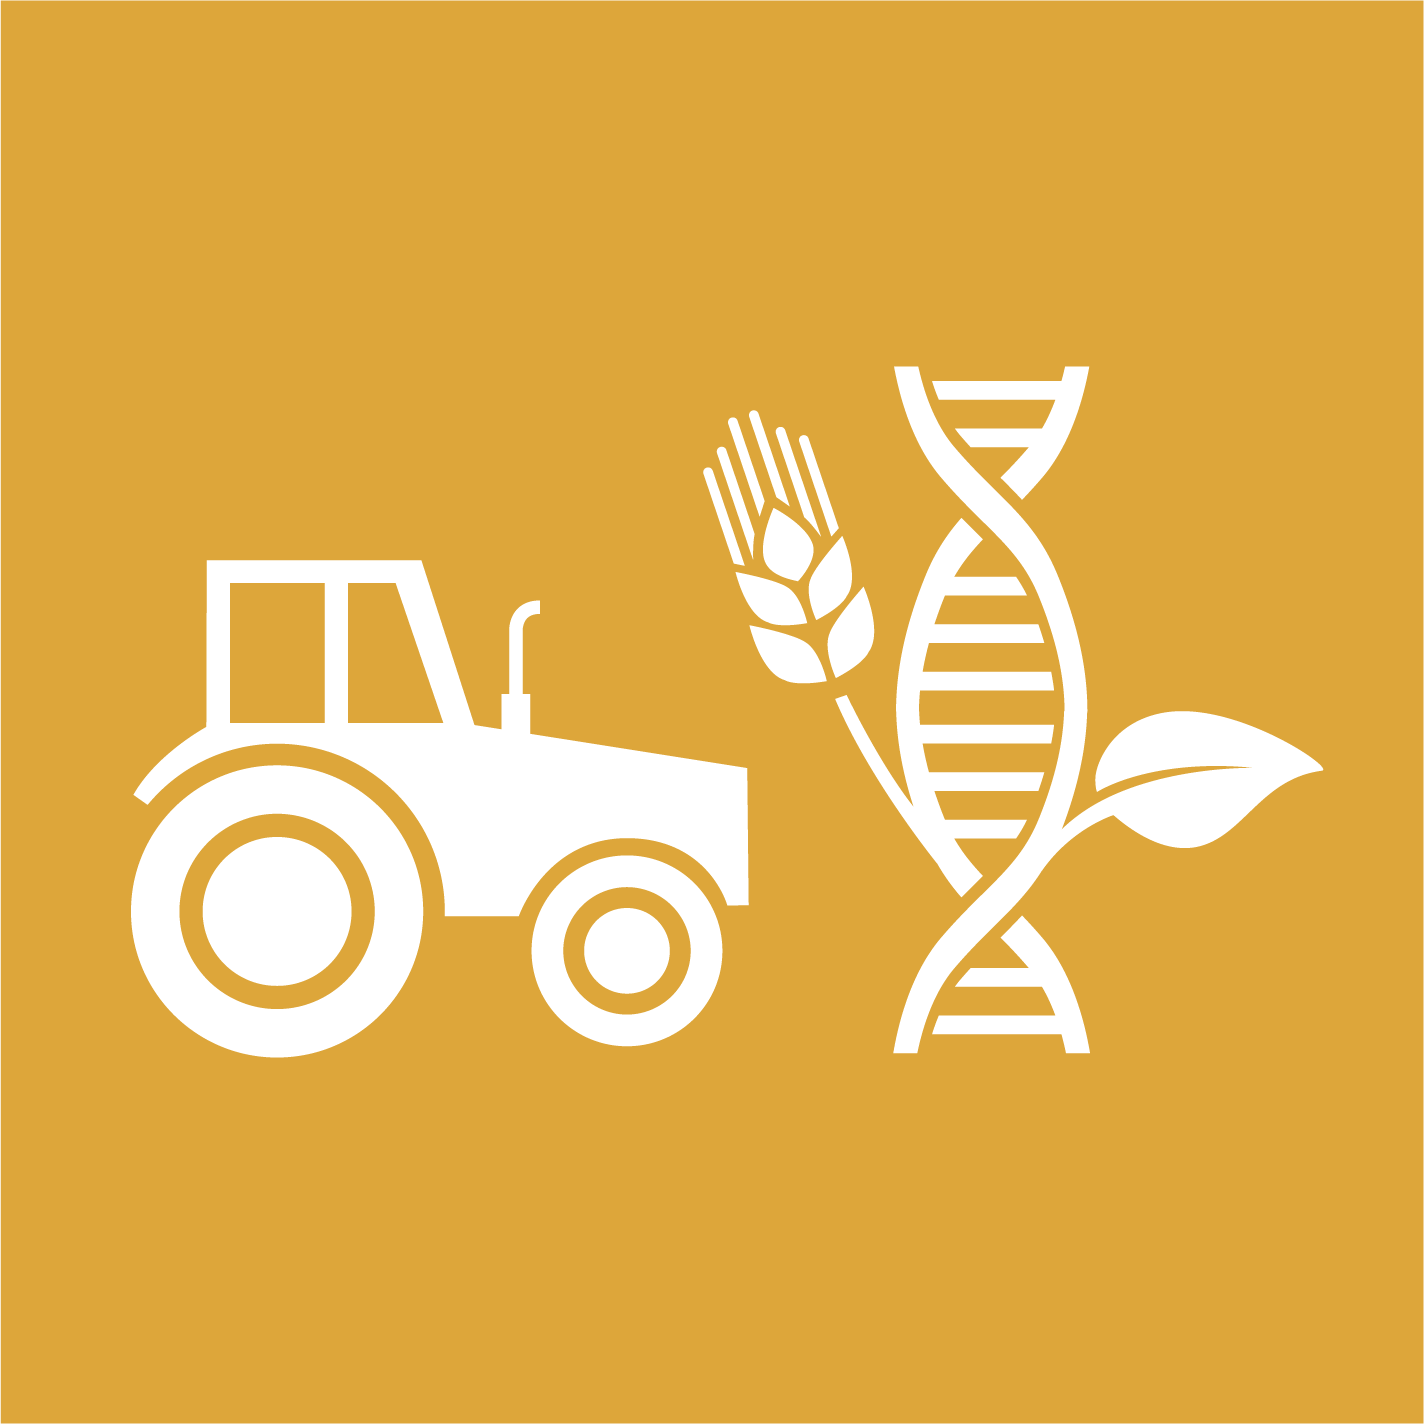 2.a - Invertir en infraestructura rural, investigación agrícola, tecnología y bancos de genes